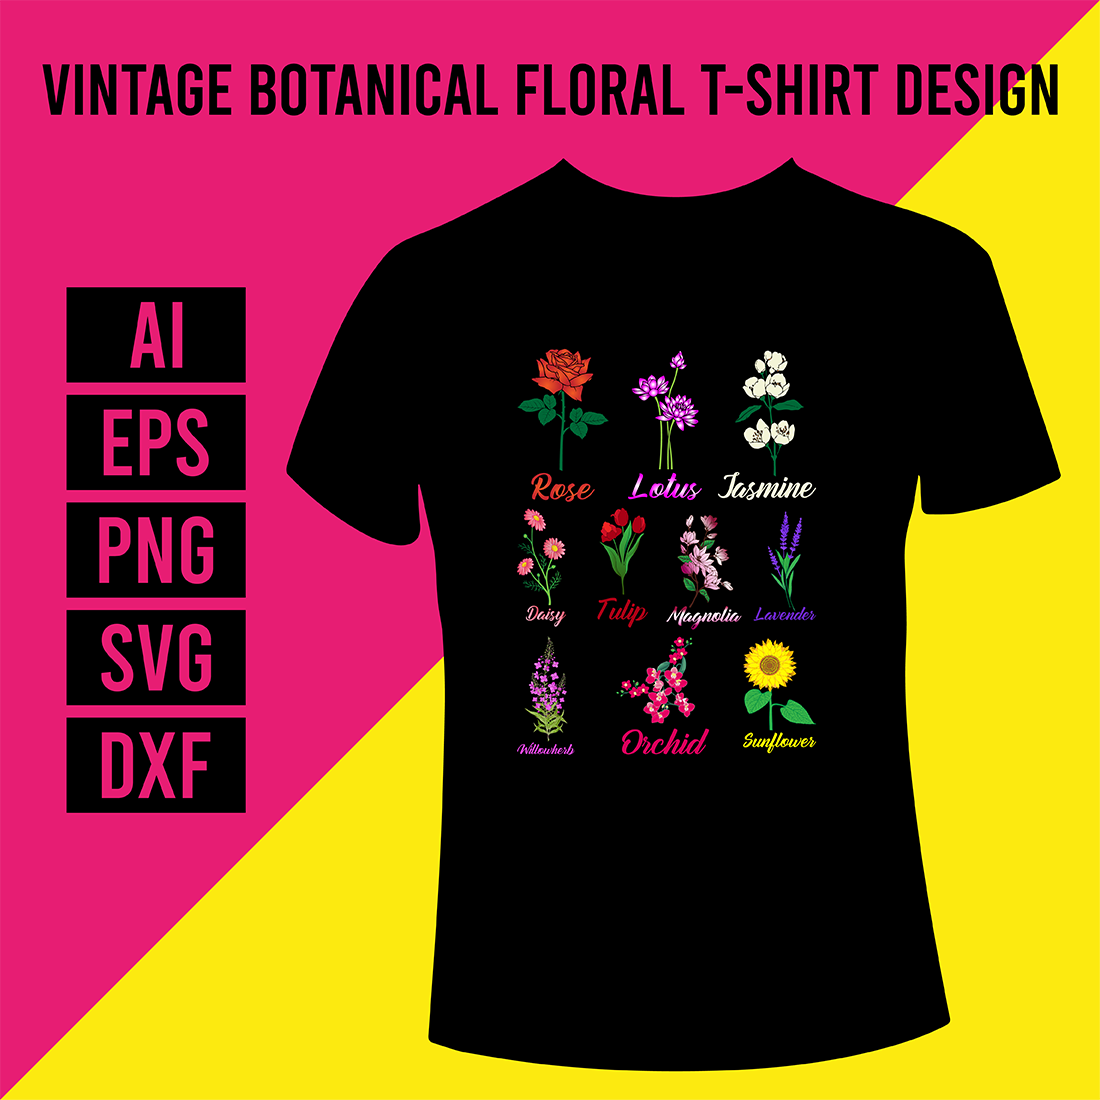 Vintage Botanical Floral Flower T-Shirt Design cover image.